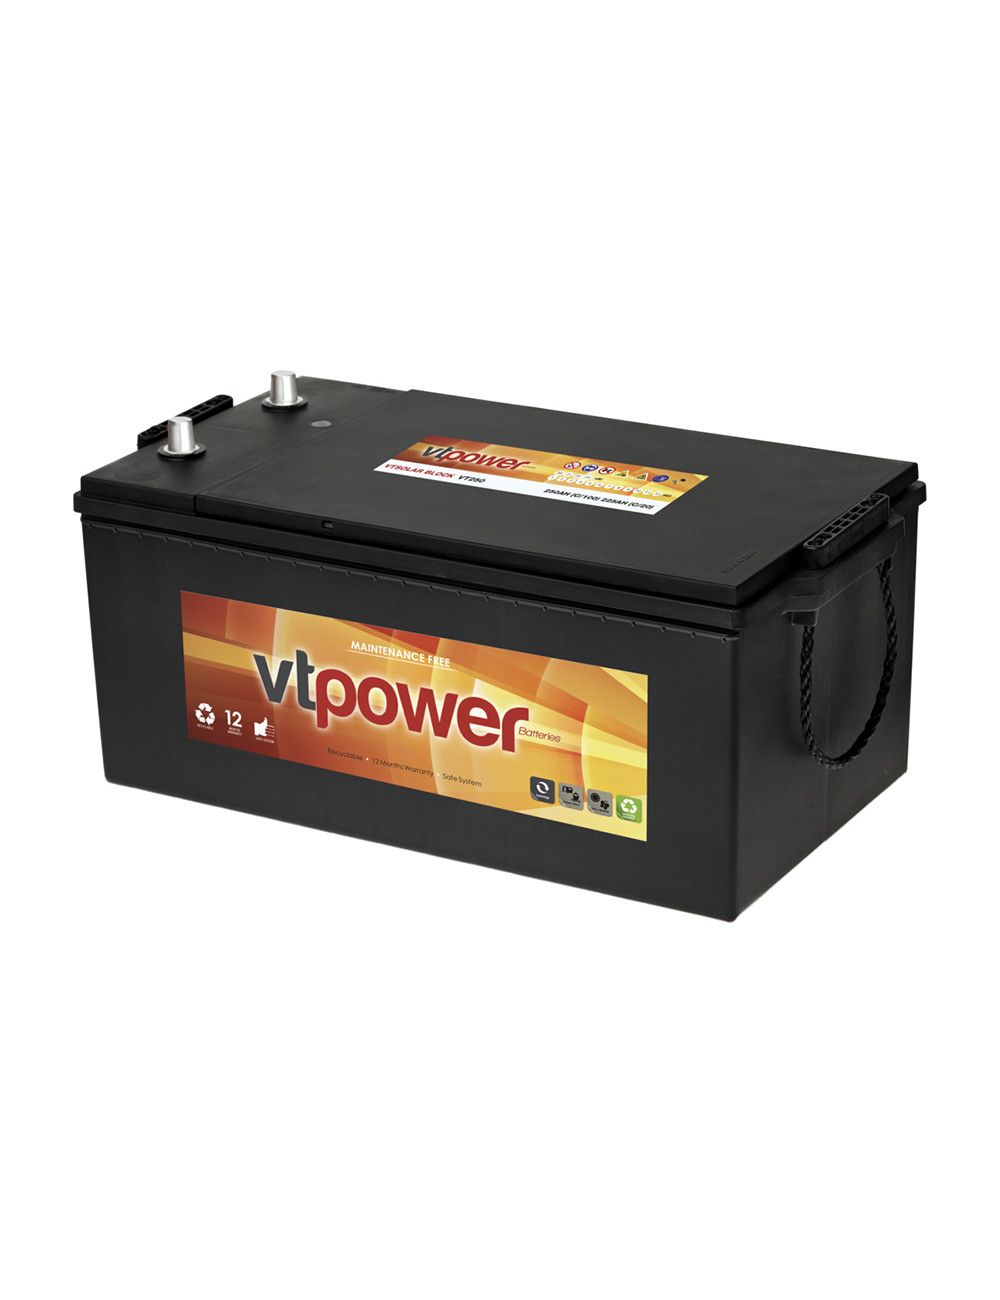 Batería 12V 250Ah C100 Solar Monoblock sellada y libre de mantenimiento (SMF) - VT250 -  - 8435582800045 - 1